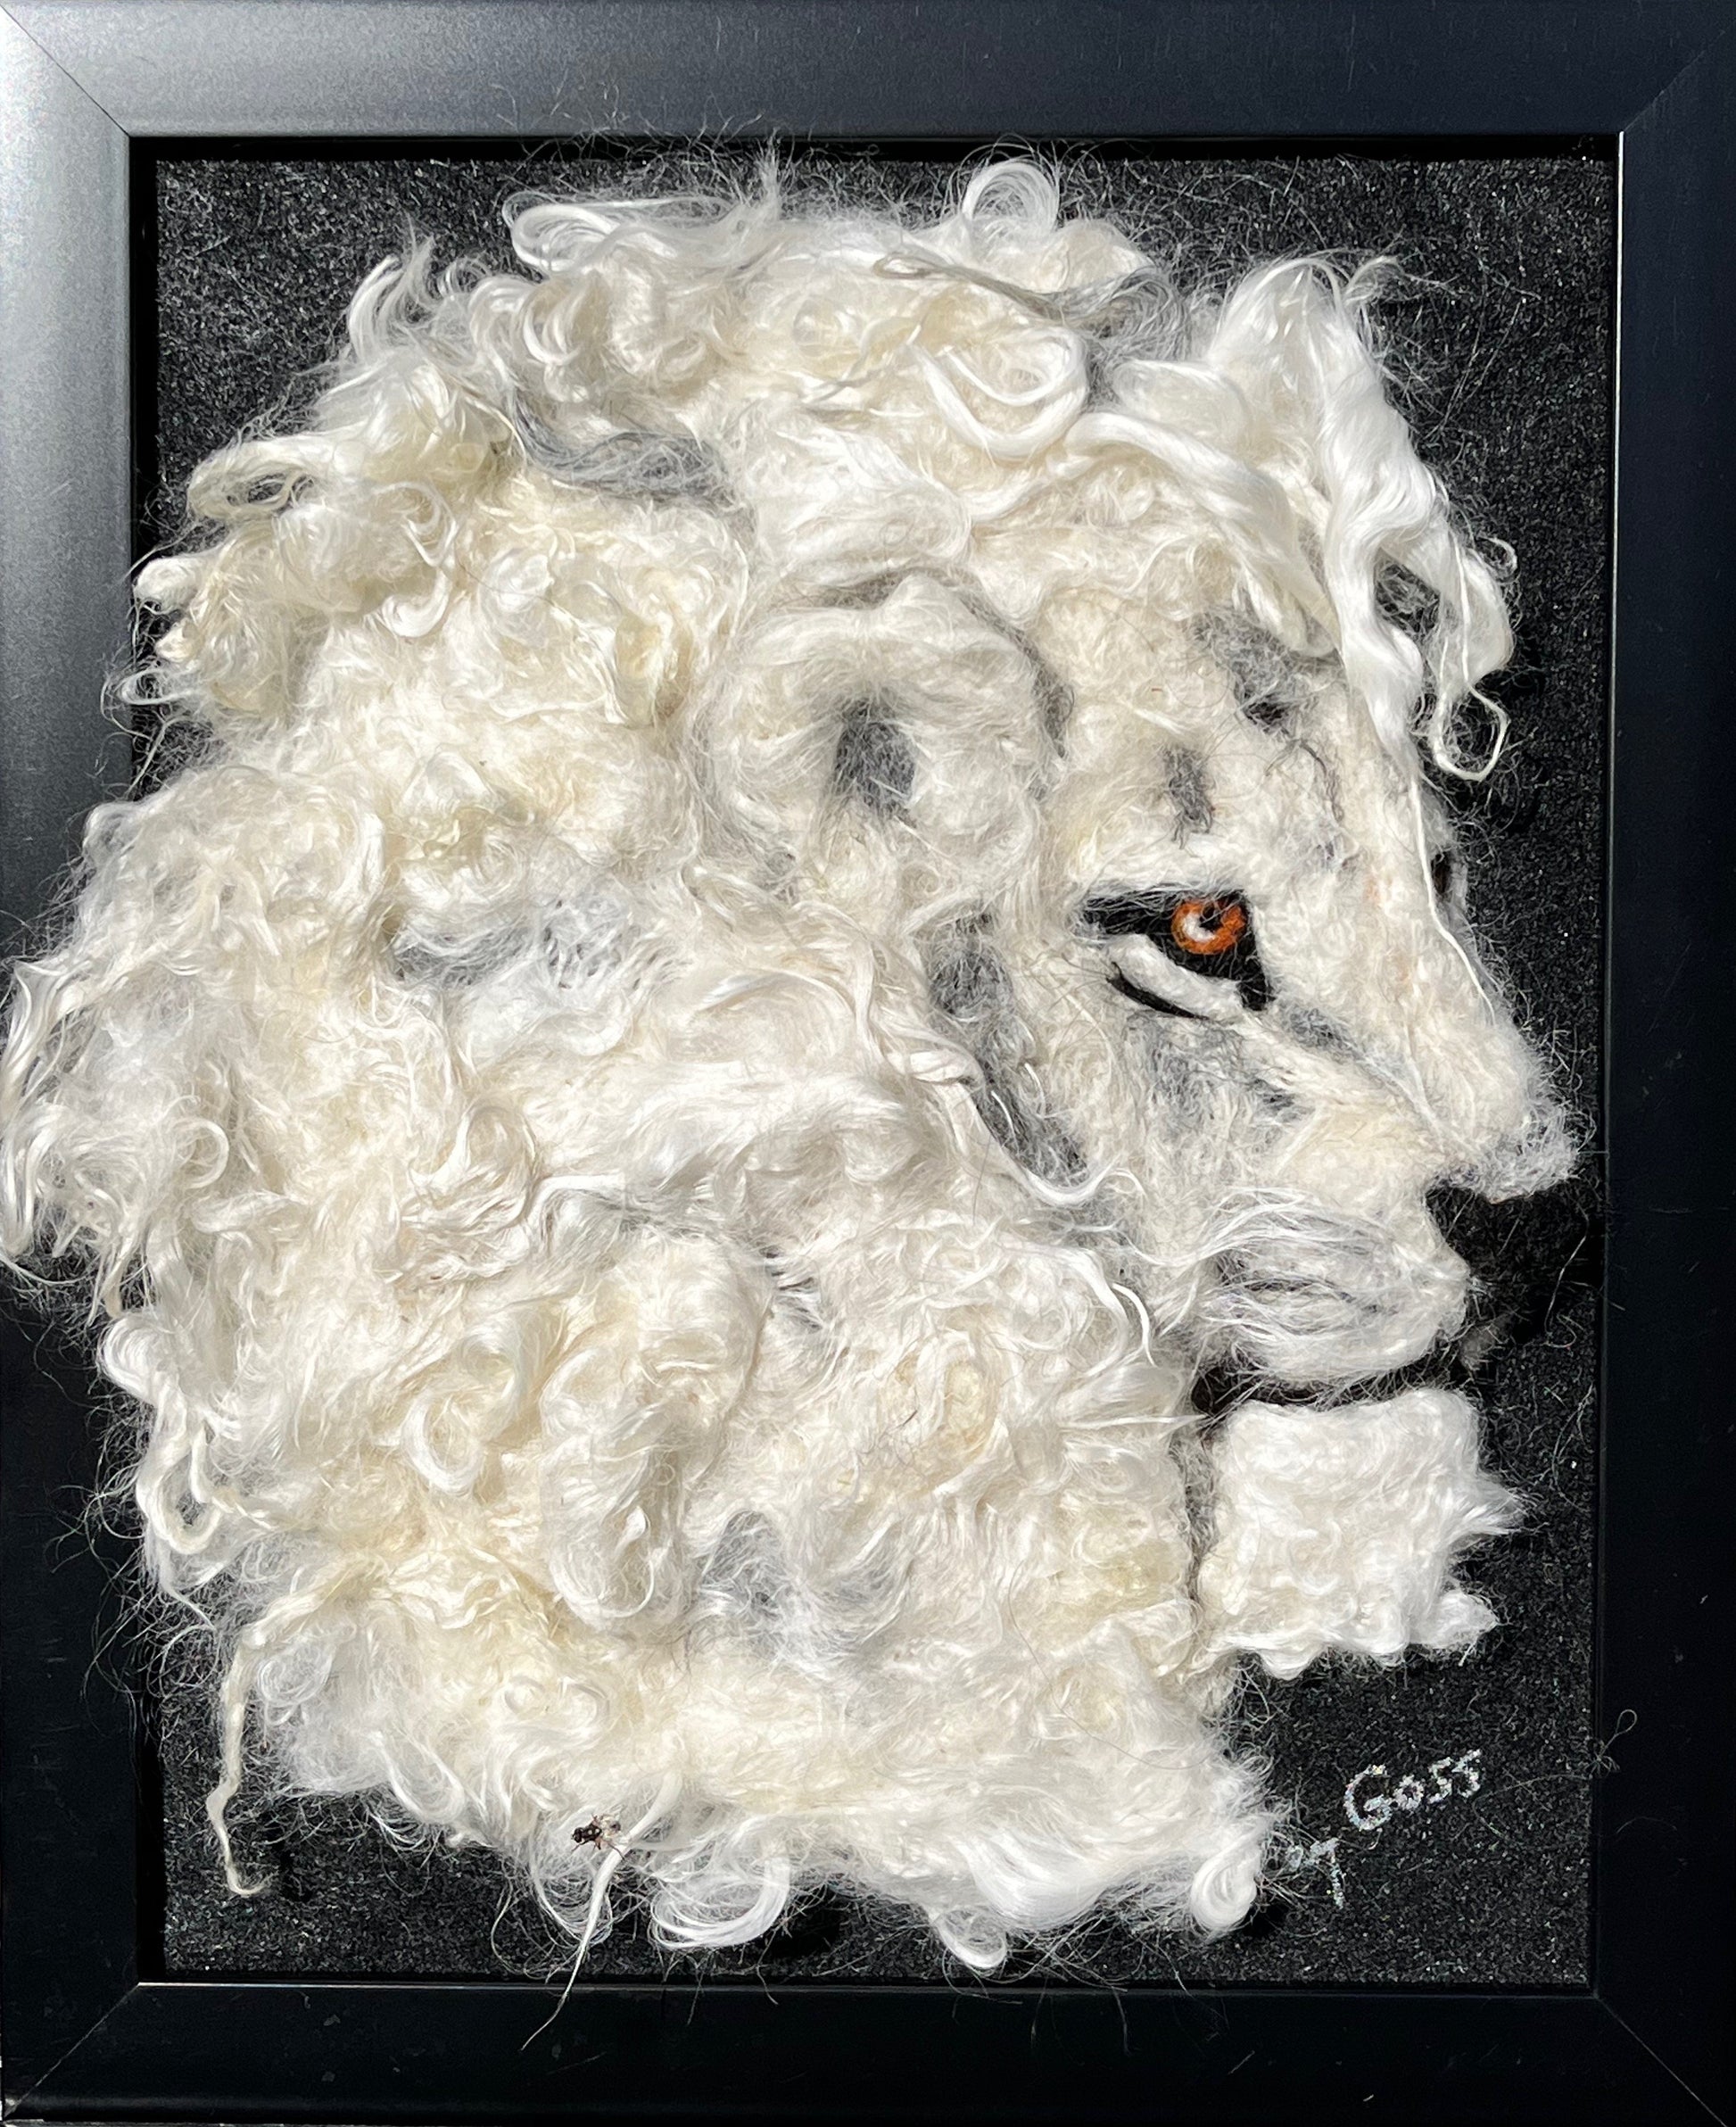 8x10 Felted Lion w/Suri Alpaca Fiber.